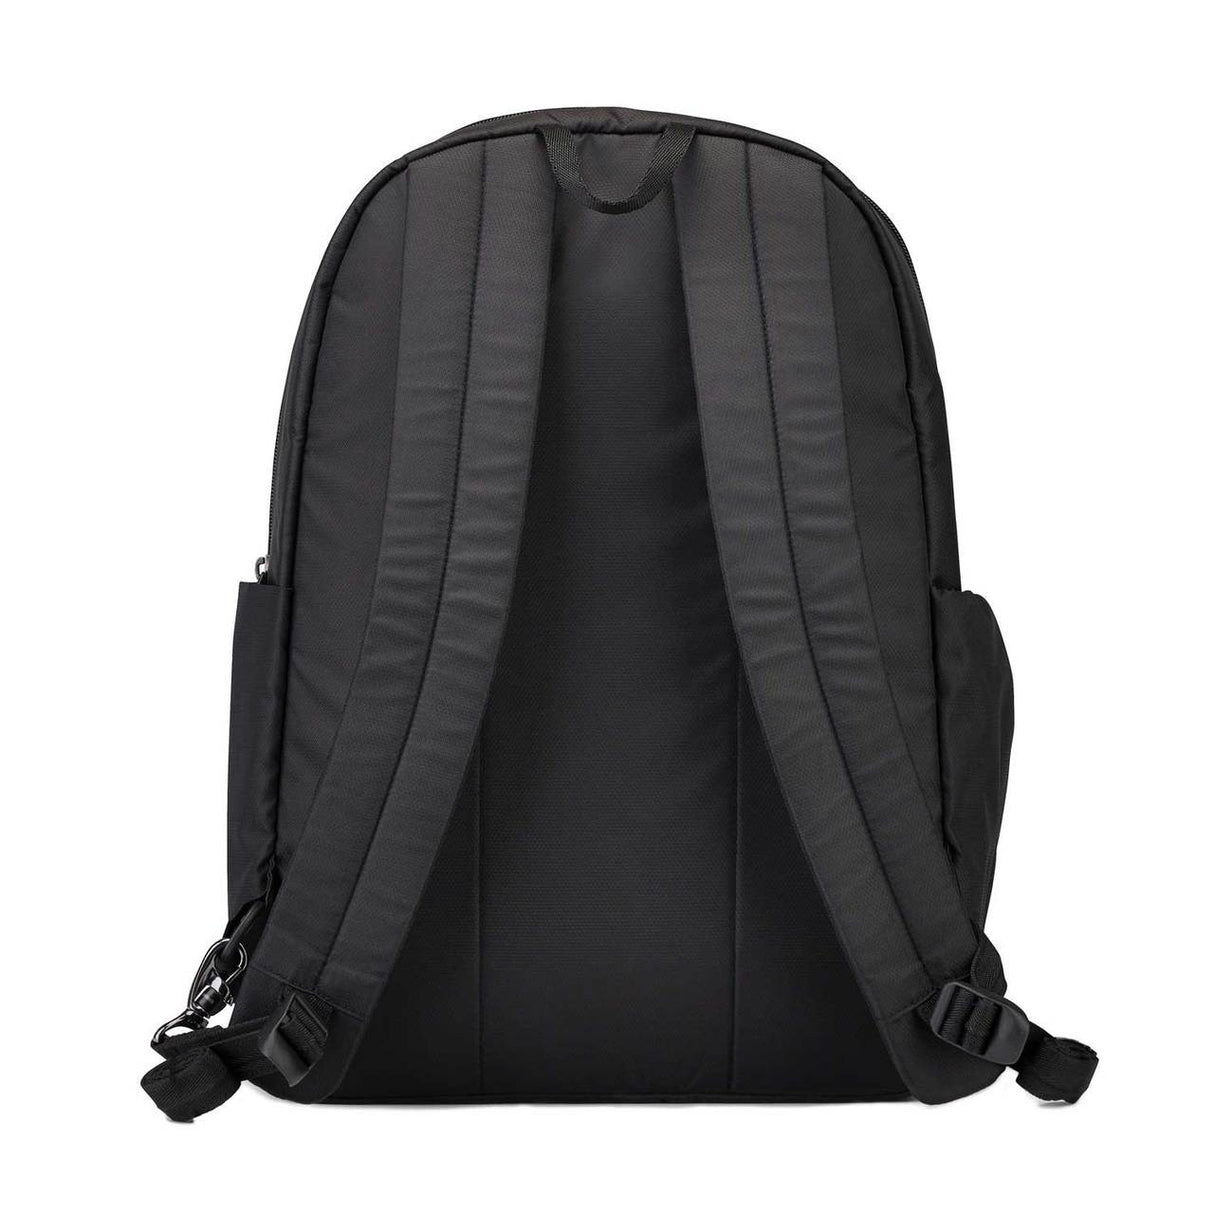 Pacsafe Daysafe Backpack